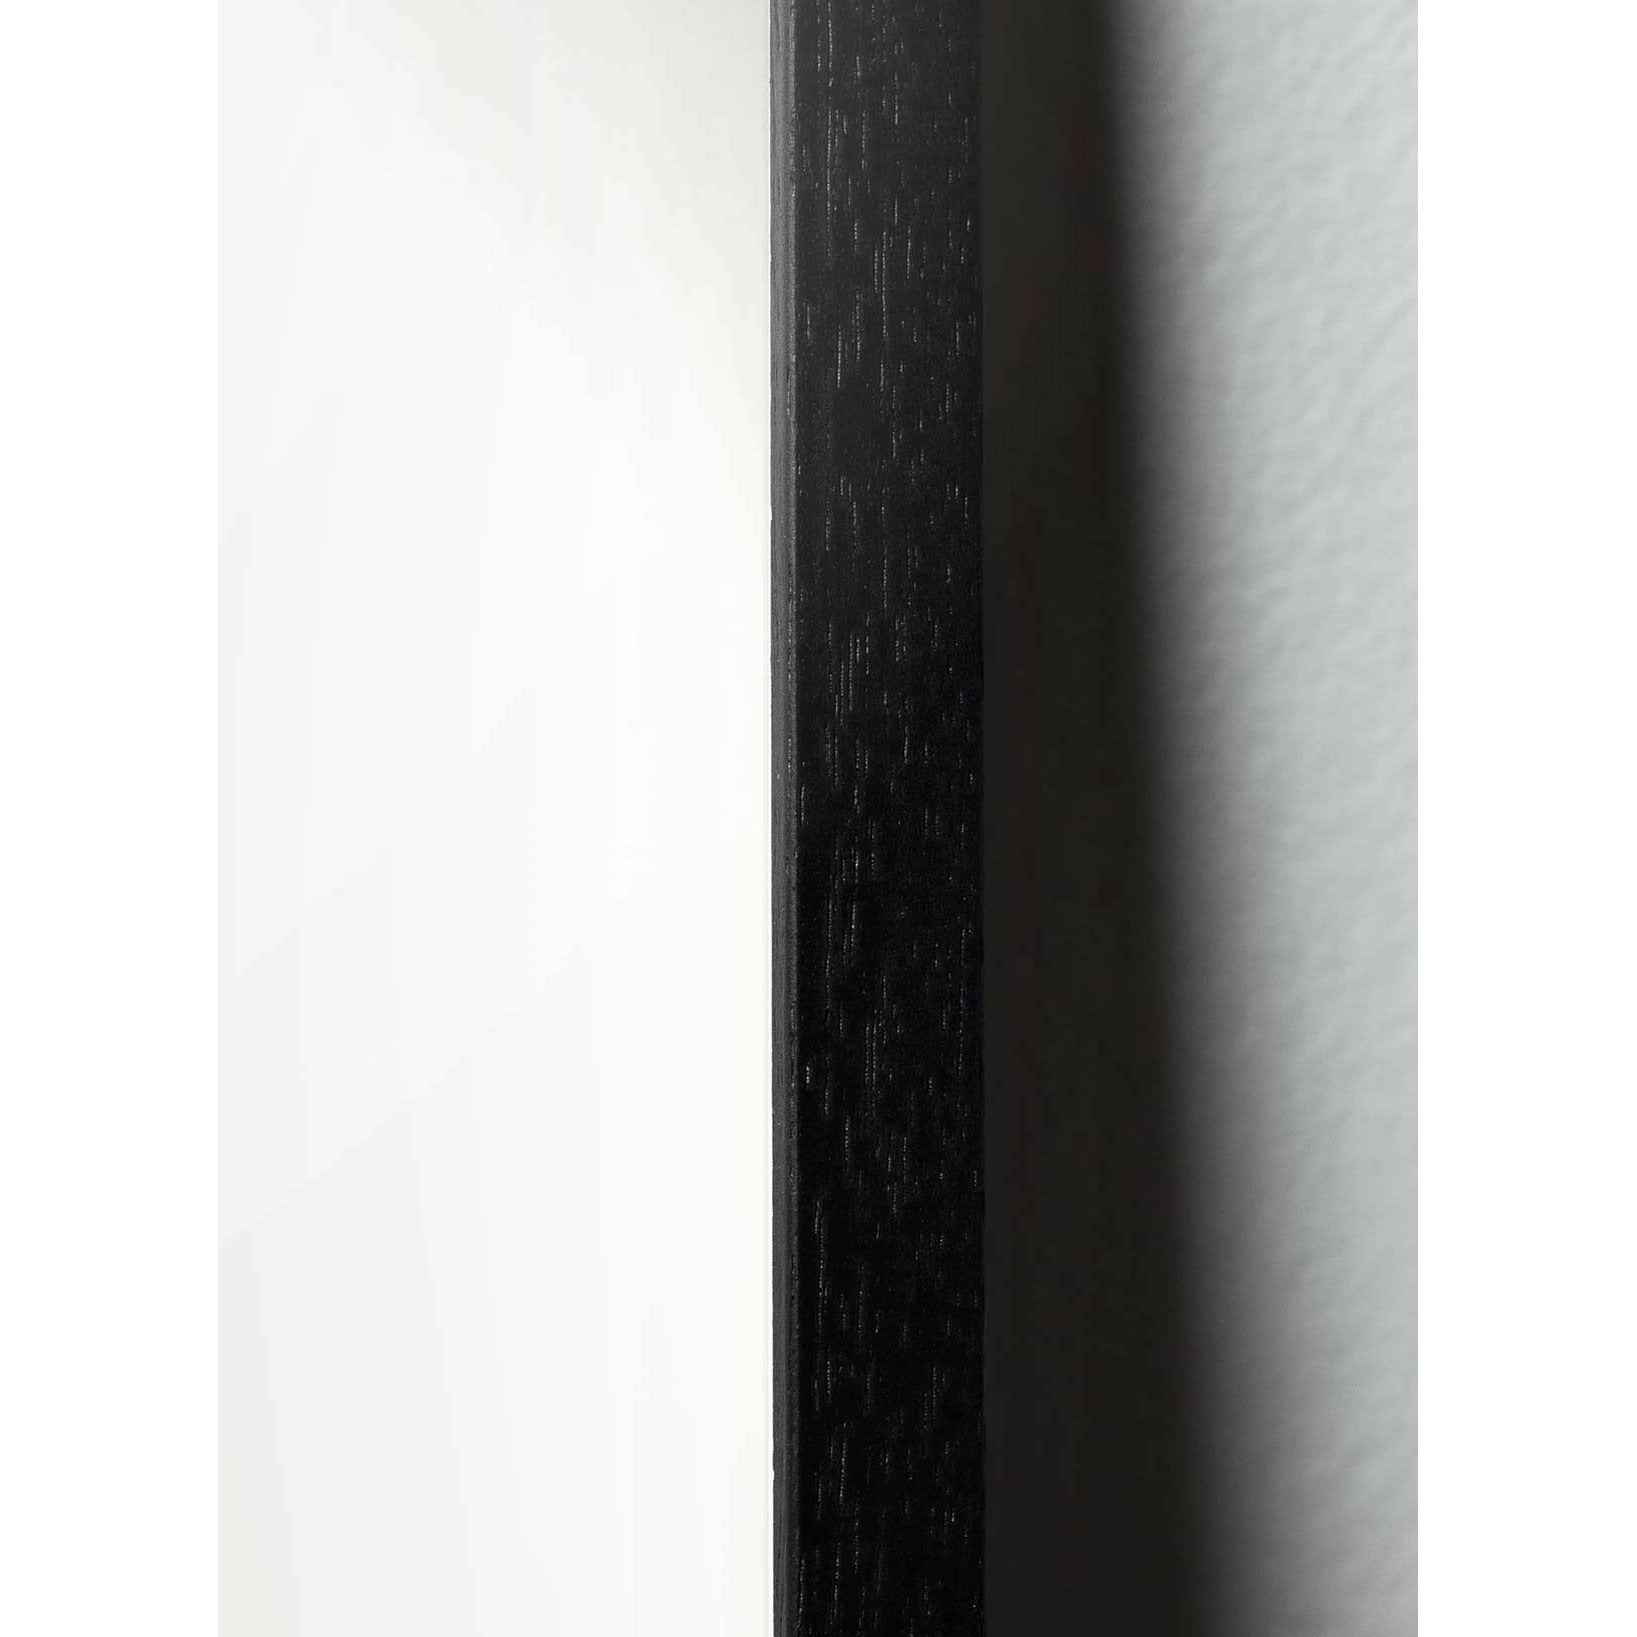 Poster della sfilata di cigni di battaino, cornice in legno laccato nero, 30x40 cm